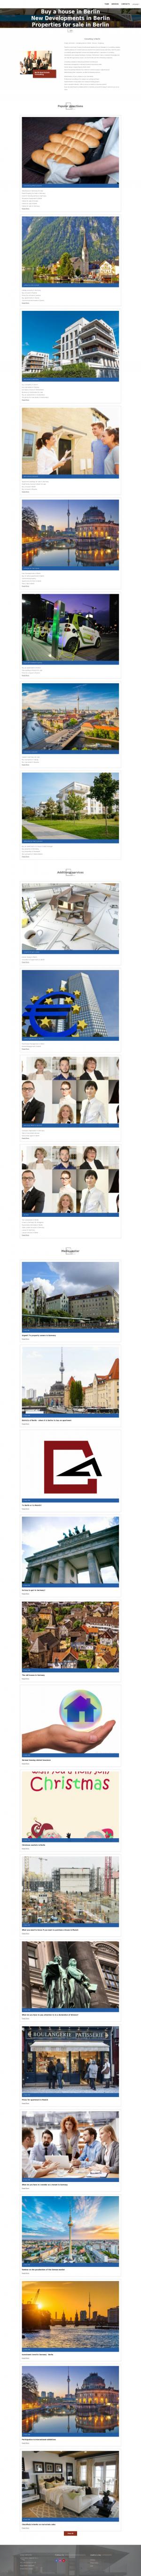 www.propertysale-berlin.com